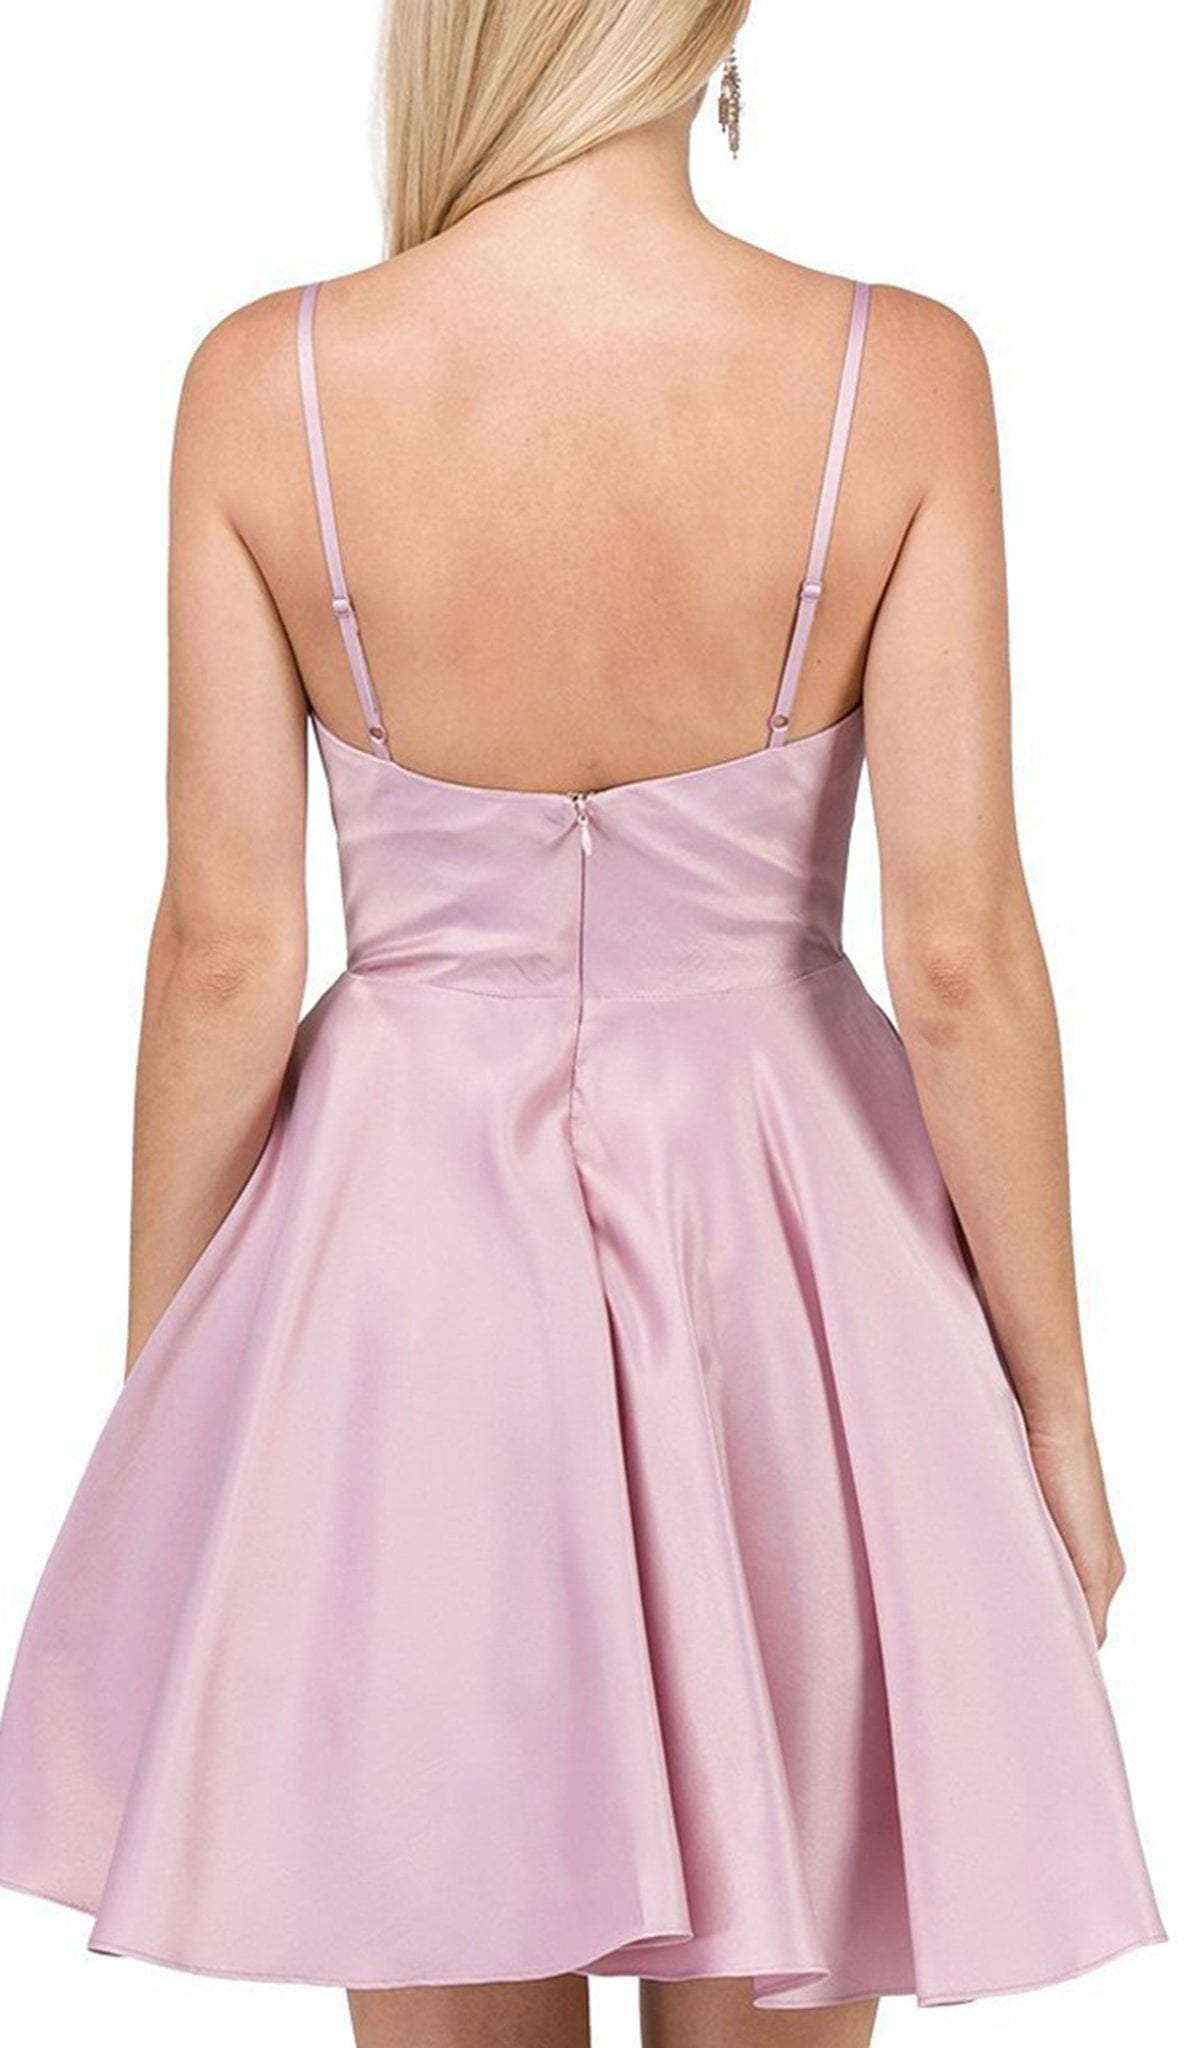 Dancing Queen - 3059 Sleek Pleated Surplice Homecoming Dress In Pink